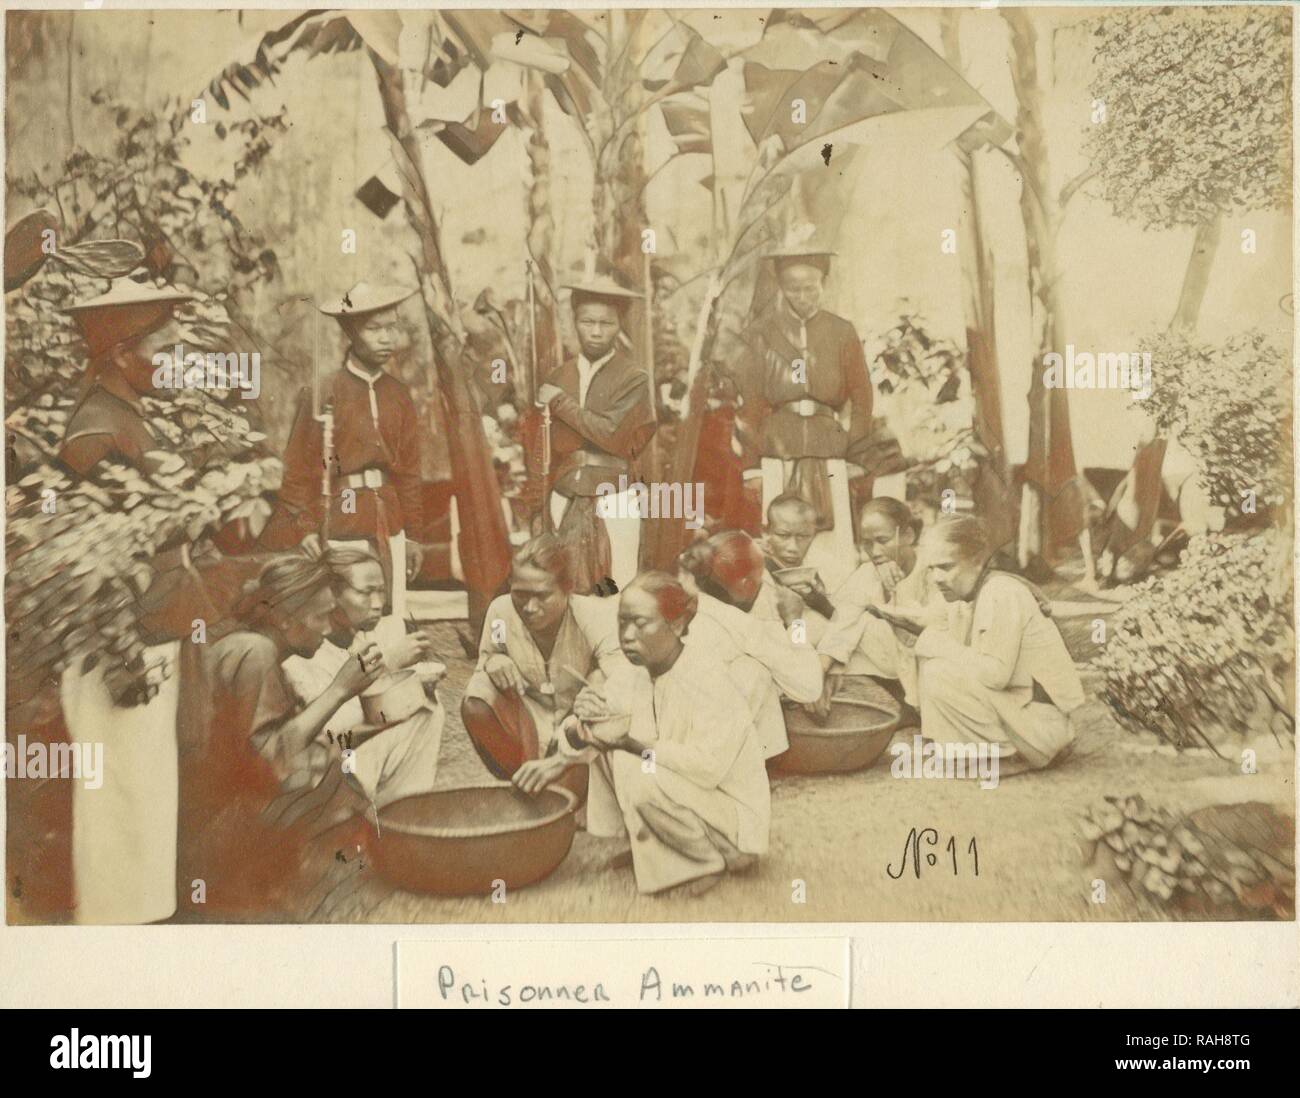 Prisonner ammanite, vistas de la Indochina francesa, Gsell, Emile, 1838-1879, albúmina, entre 1866 y 1879, muestra un grupo reinventado Foto de stock